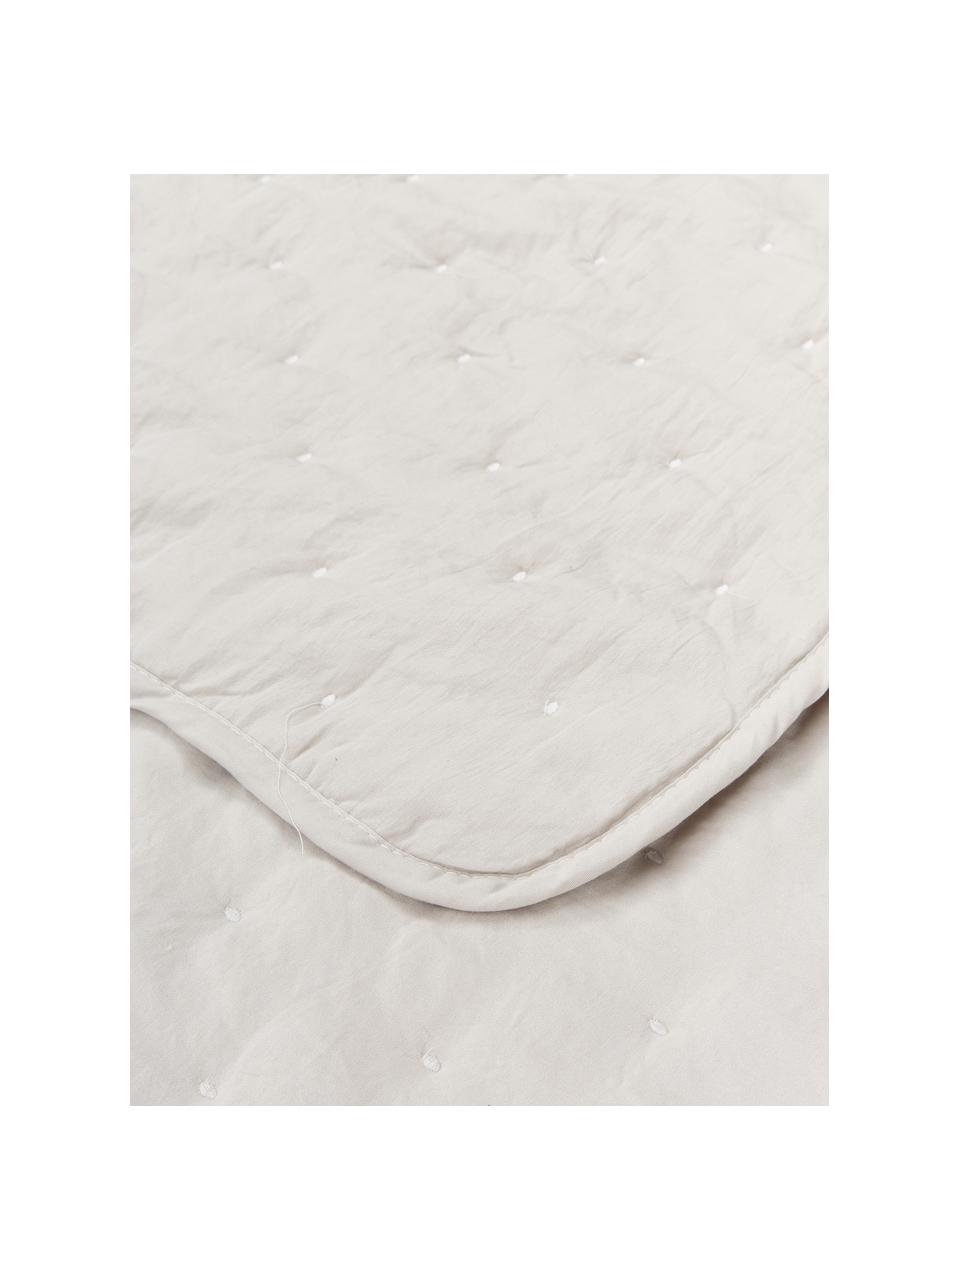 Copriletto trapuntato bianco crema Wida, 100% poliestere, Bianco crema, Larg. 260 x Lung. 260 cm (per letti da 200 x 200)